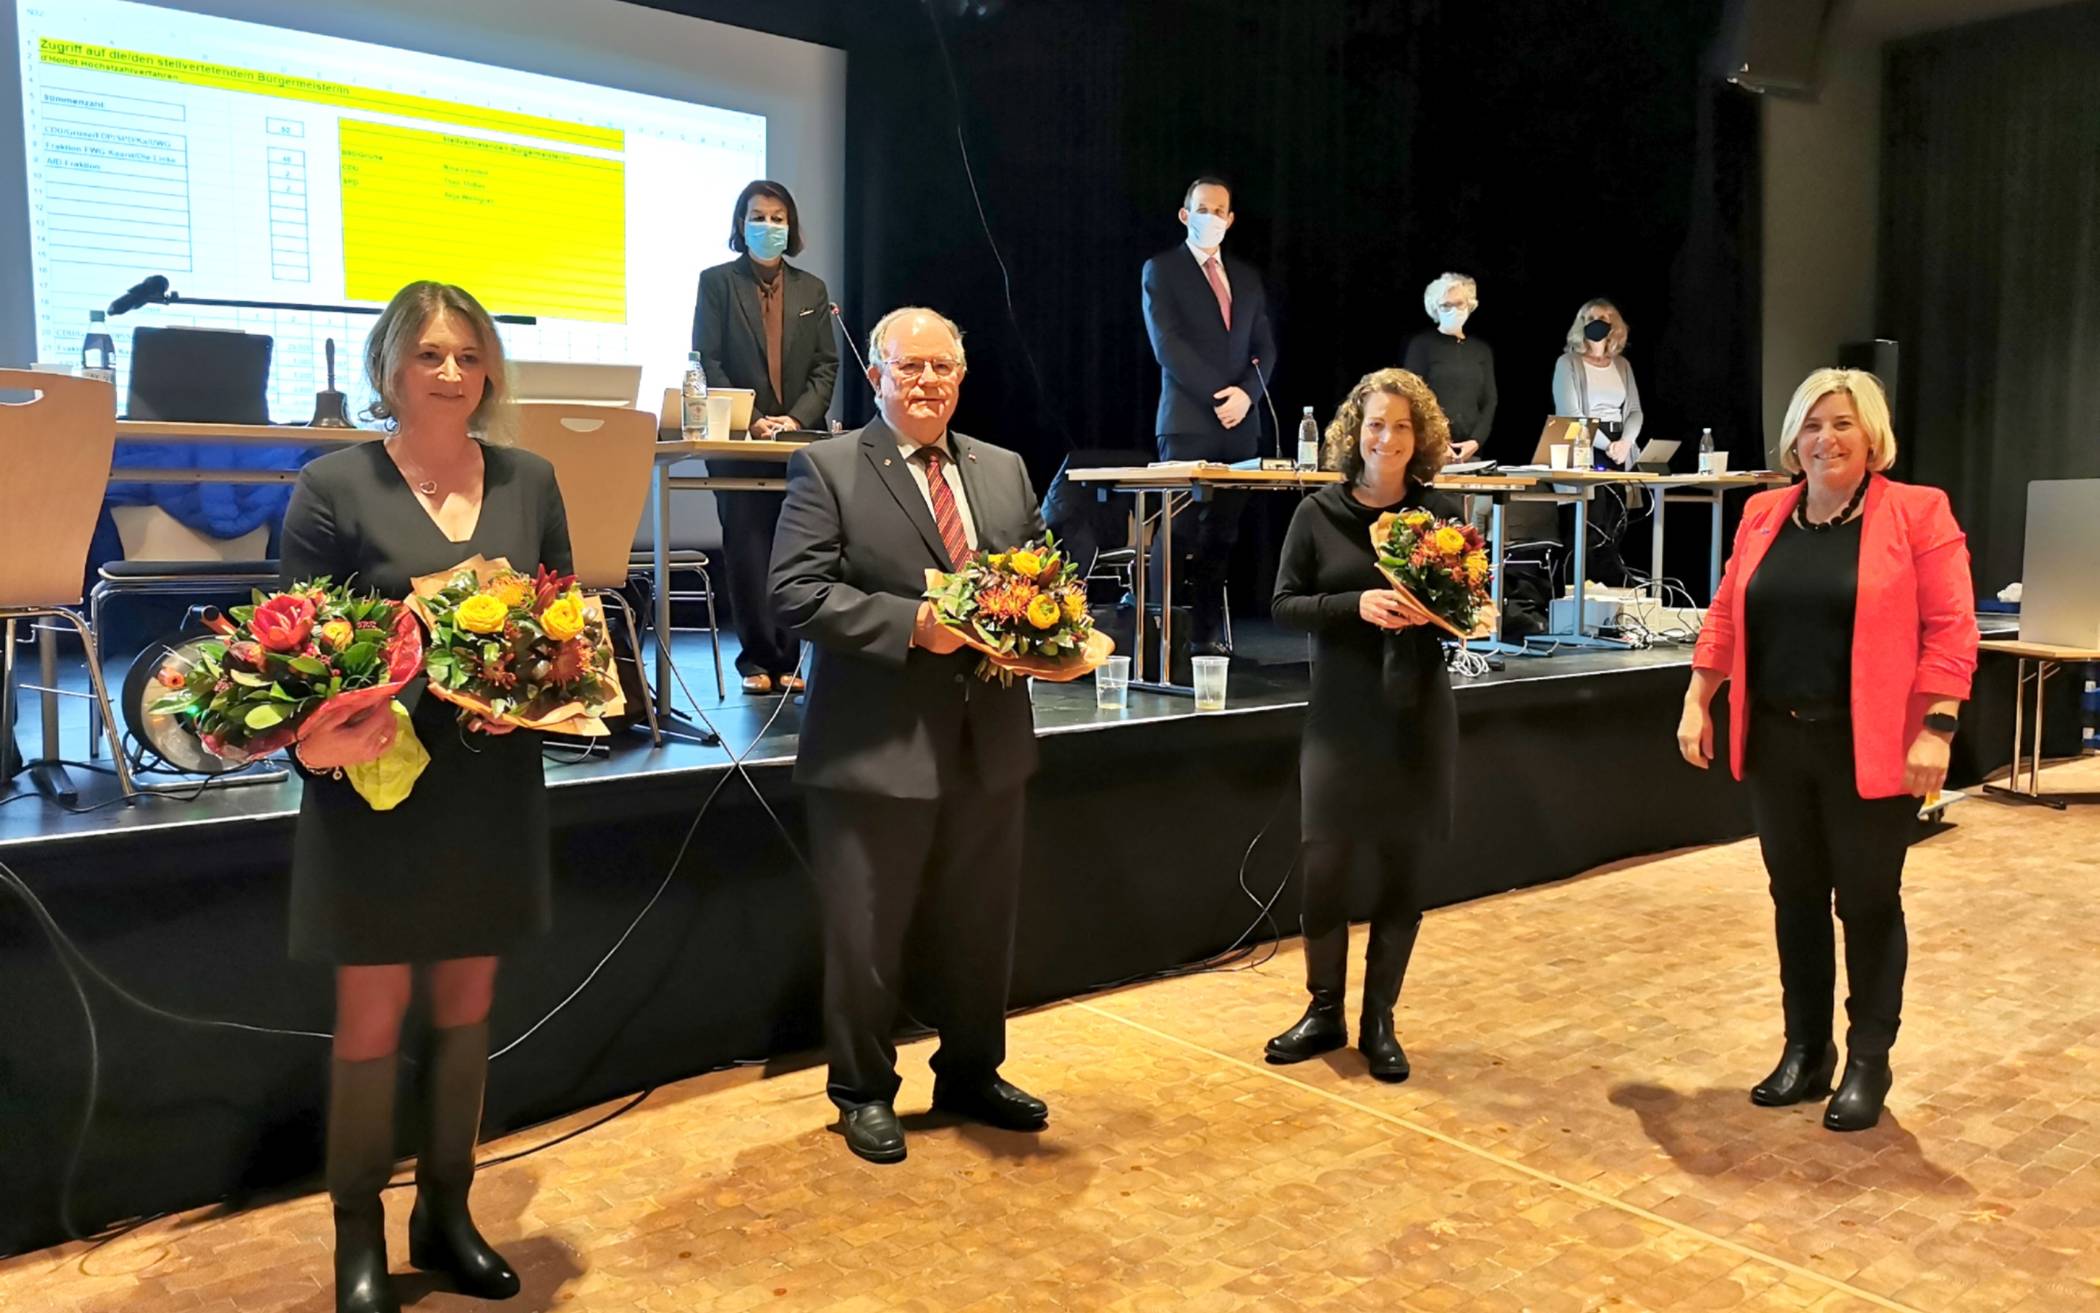  Kaarst hat jetzt drei stellvertretende Bürgermeister. Nina Lennhof, Grüne (3. von links), ist erste stellvertretende Bürgermeisterin. Theo Thissen, CDU (2. von links), wurde als zweiter stellvertretender Bürgermeister gewählt, ihm folgt Anja Weingran, SPD (links).  